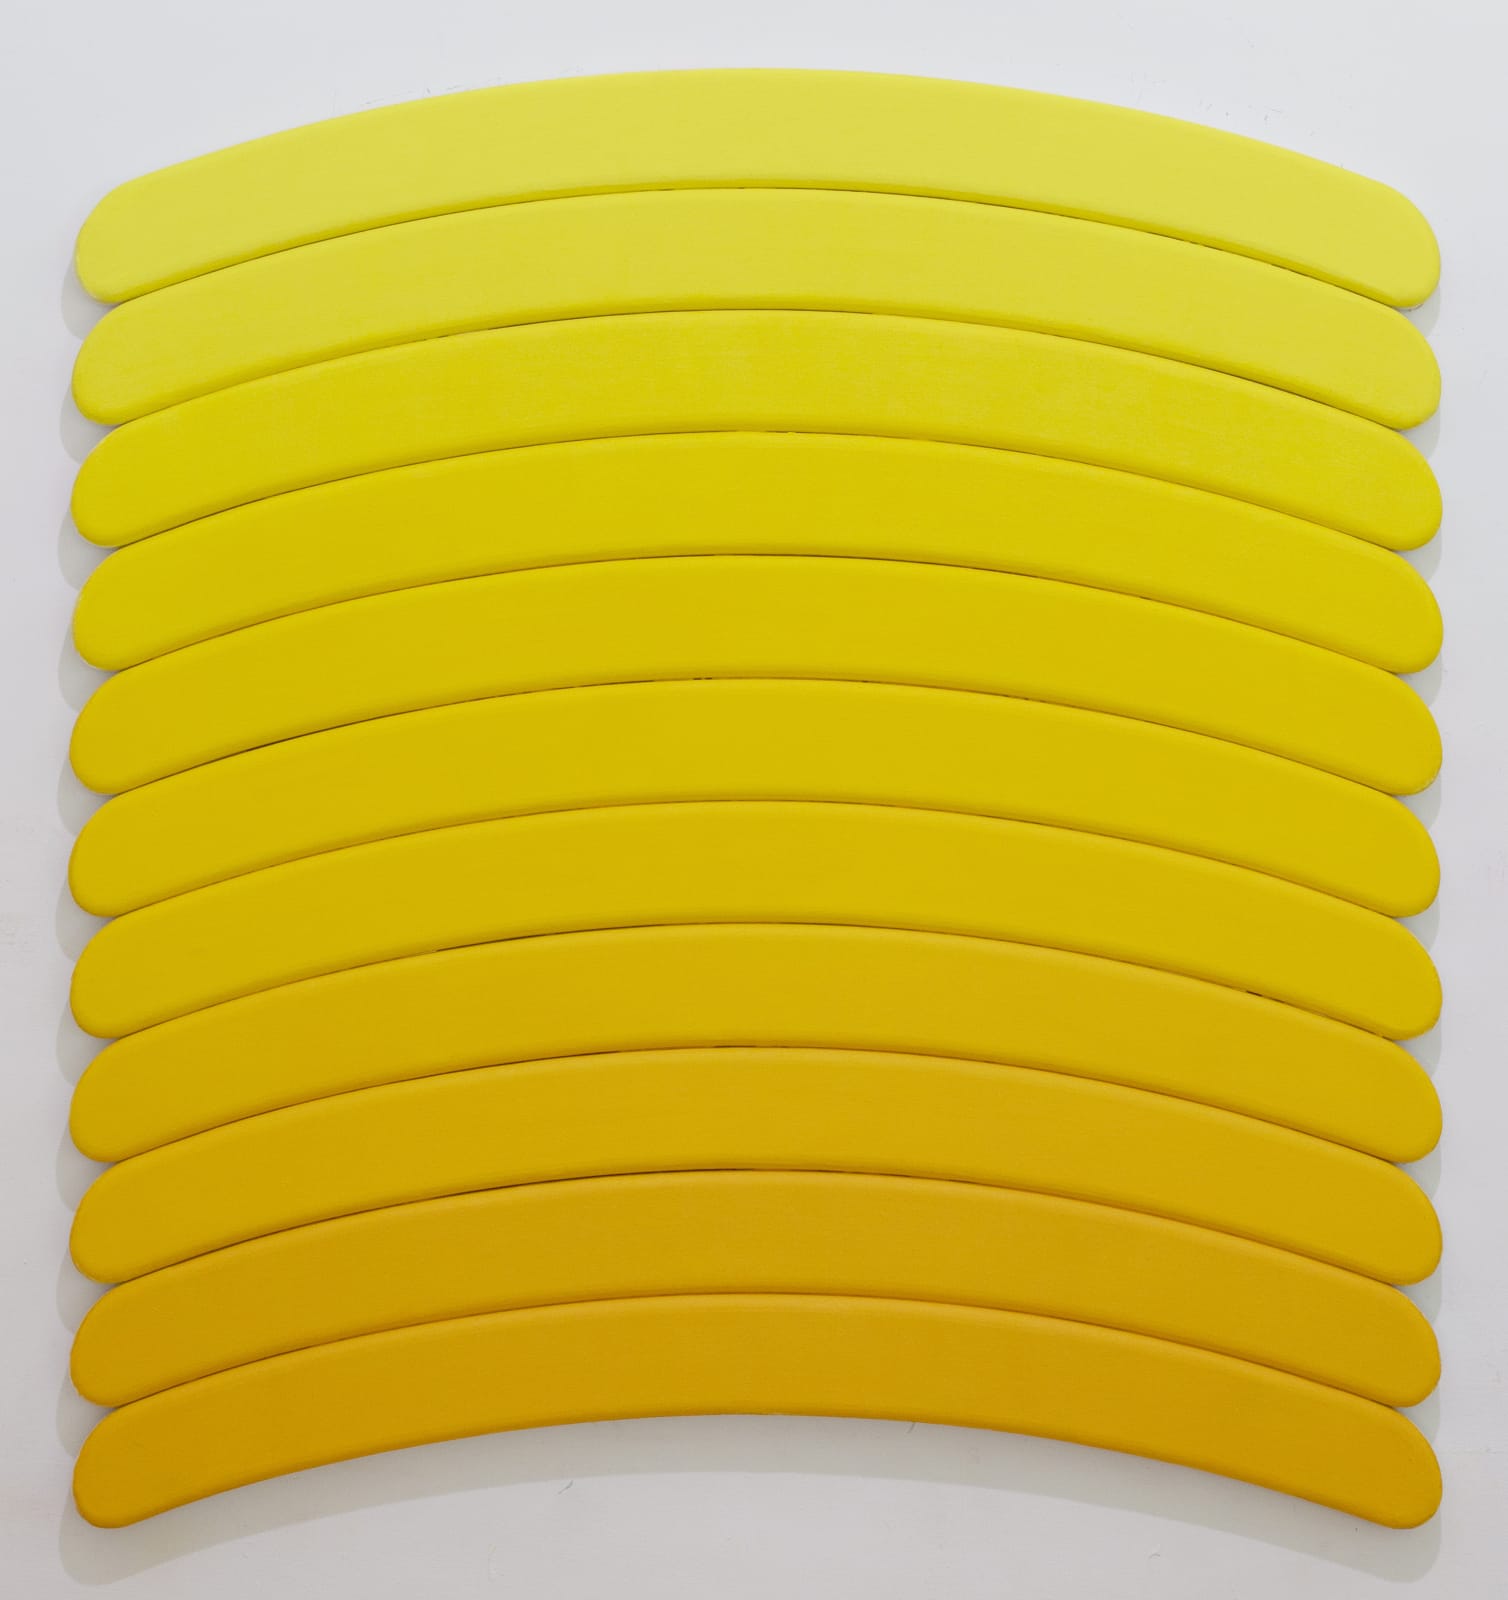 Luke Diiorio, Untitled (cadmium yellow), 2020